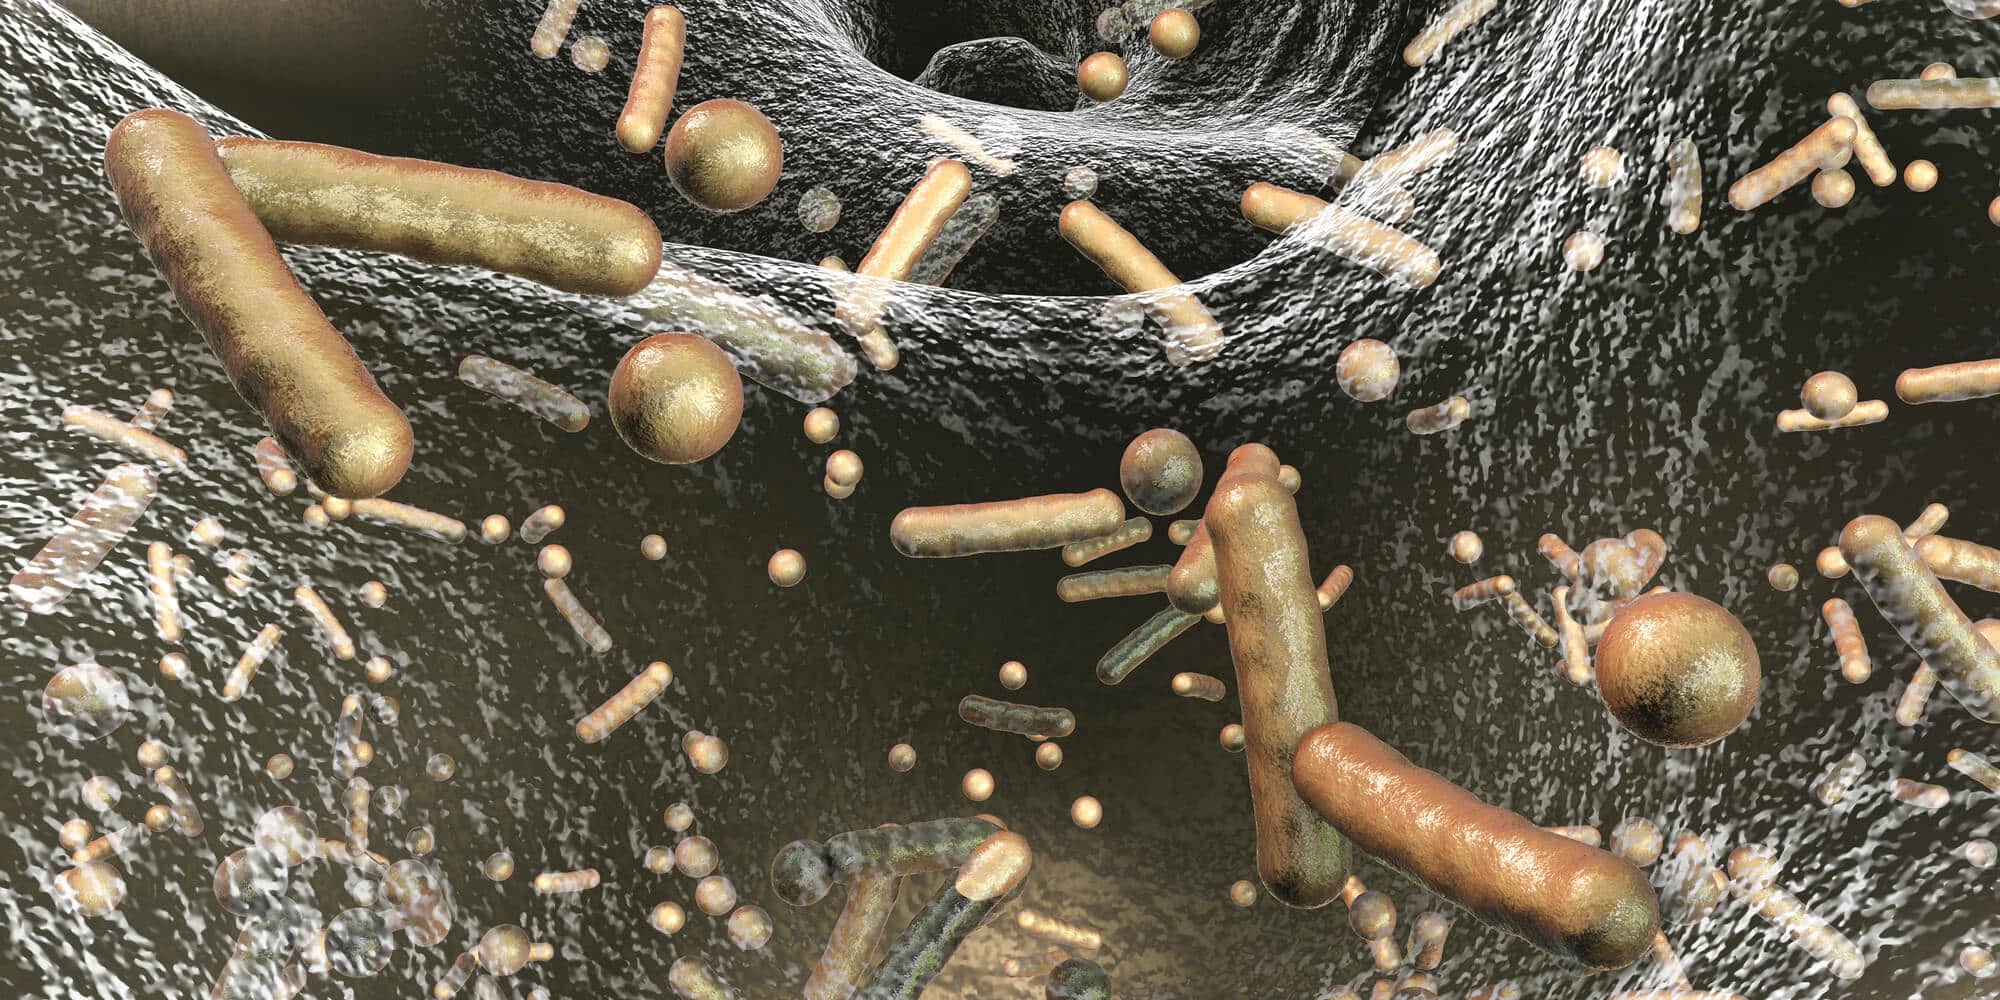 البكتيريا مقاومة للمضادات الحيوية. الرسم التوضيحي: موقع Depositphotos.com